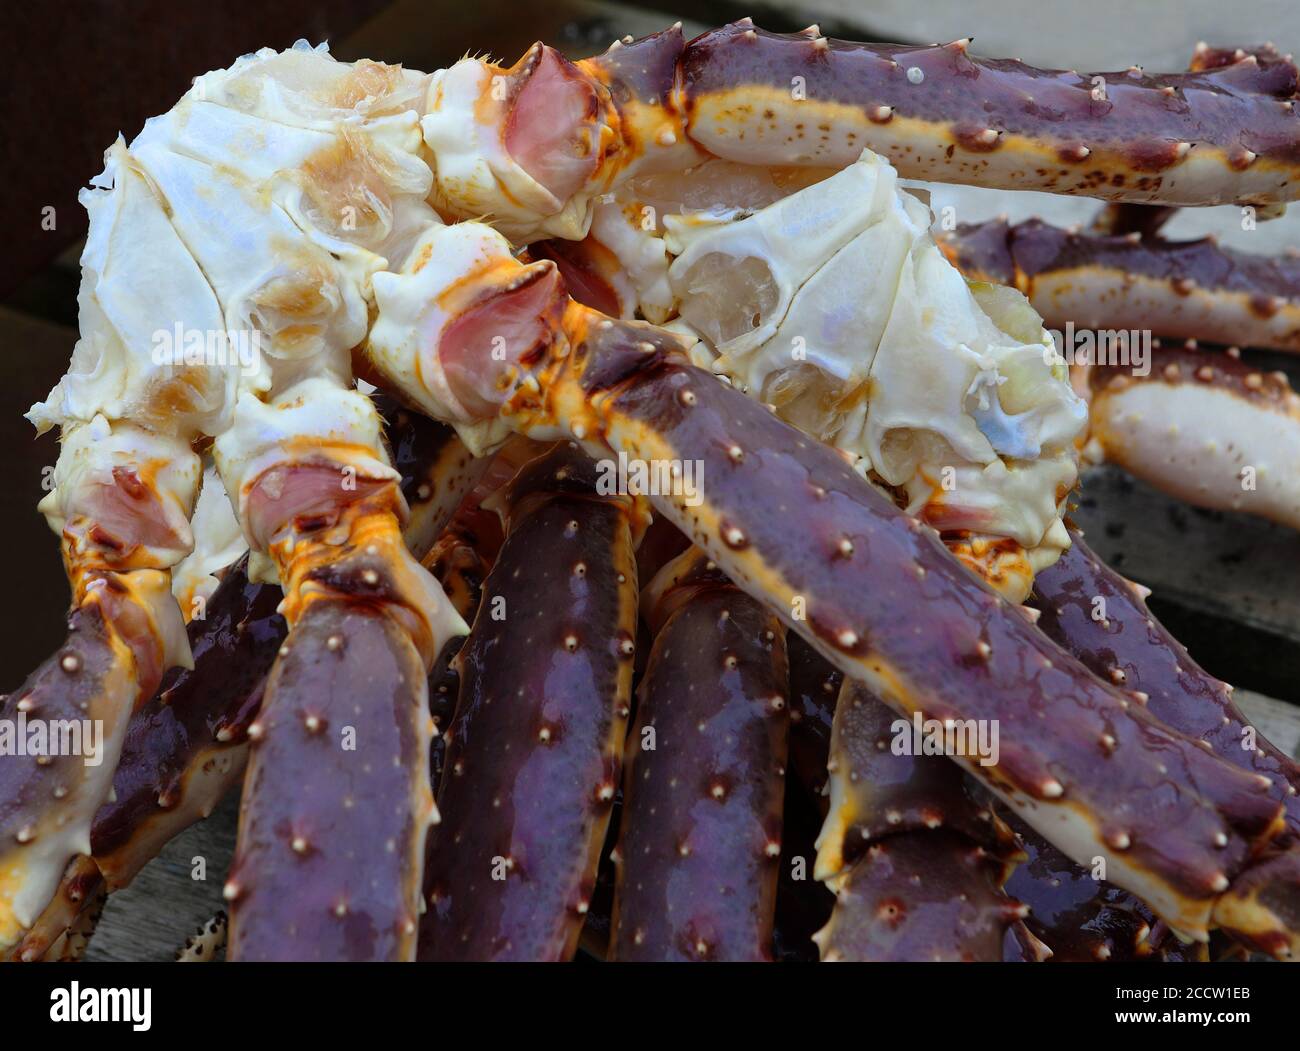 Gros plan des grosses pattes de crabe géant avant la cuisson, faible DDL. Macro colorée. Banque D'Images